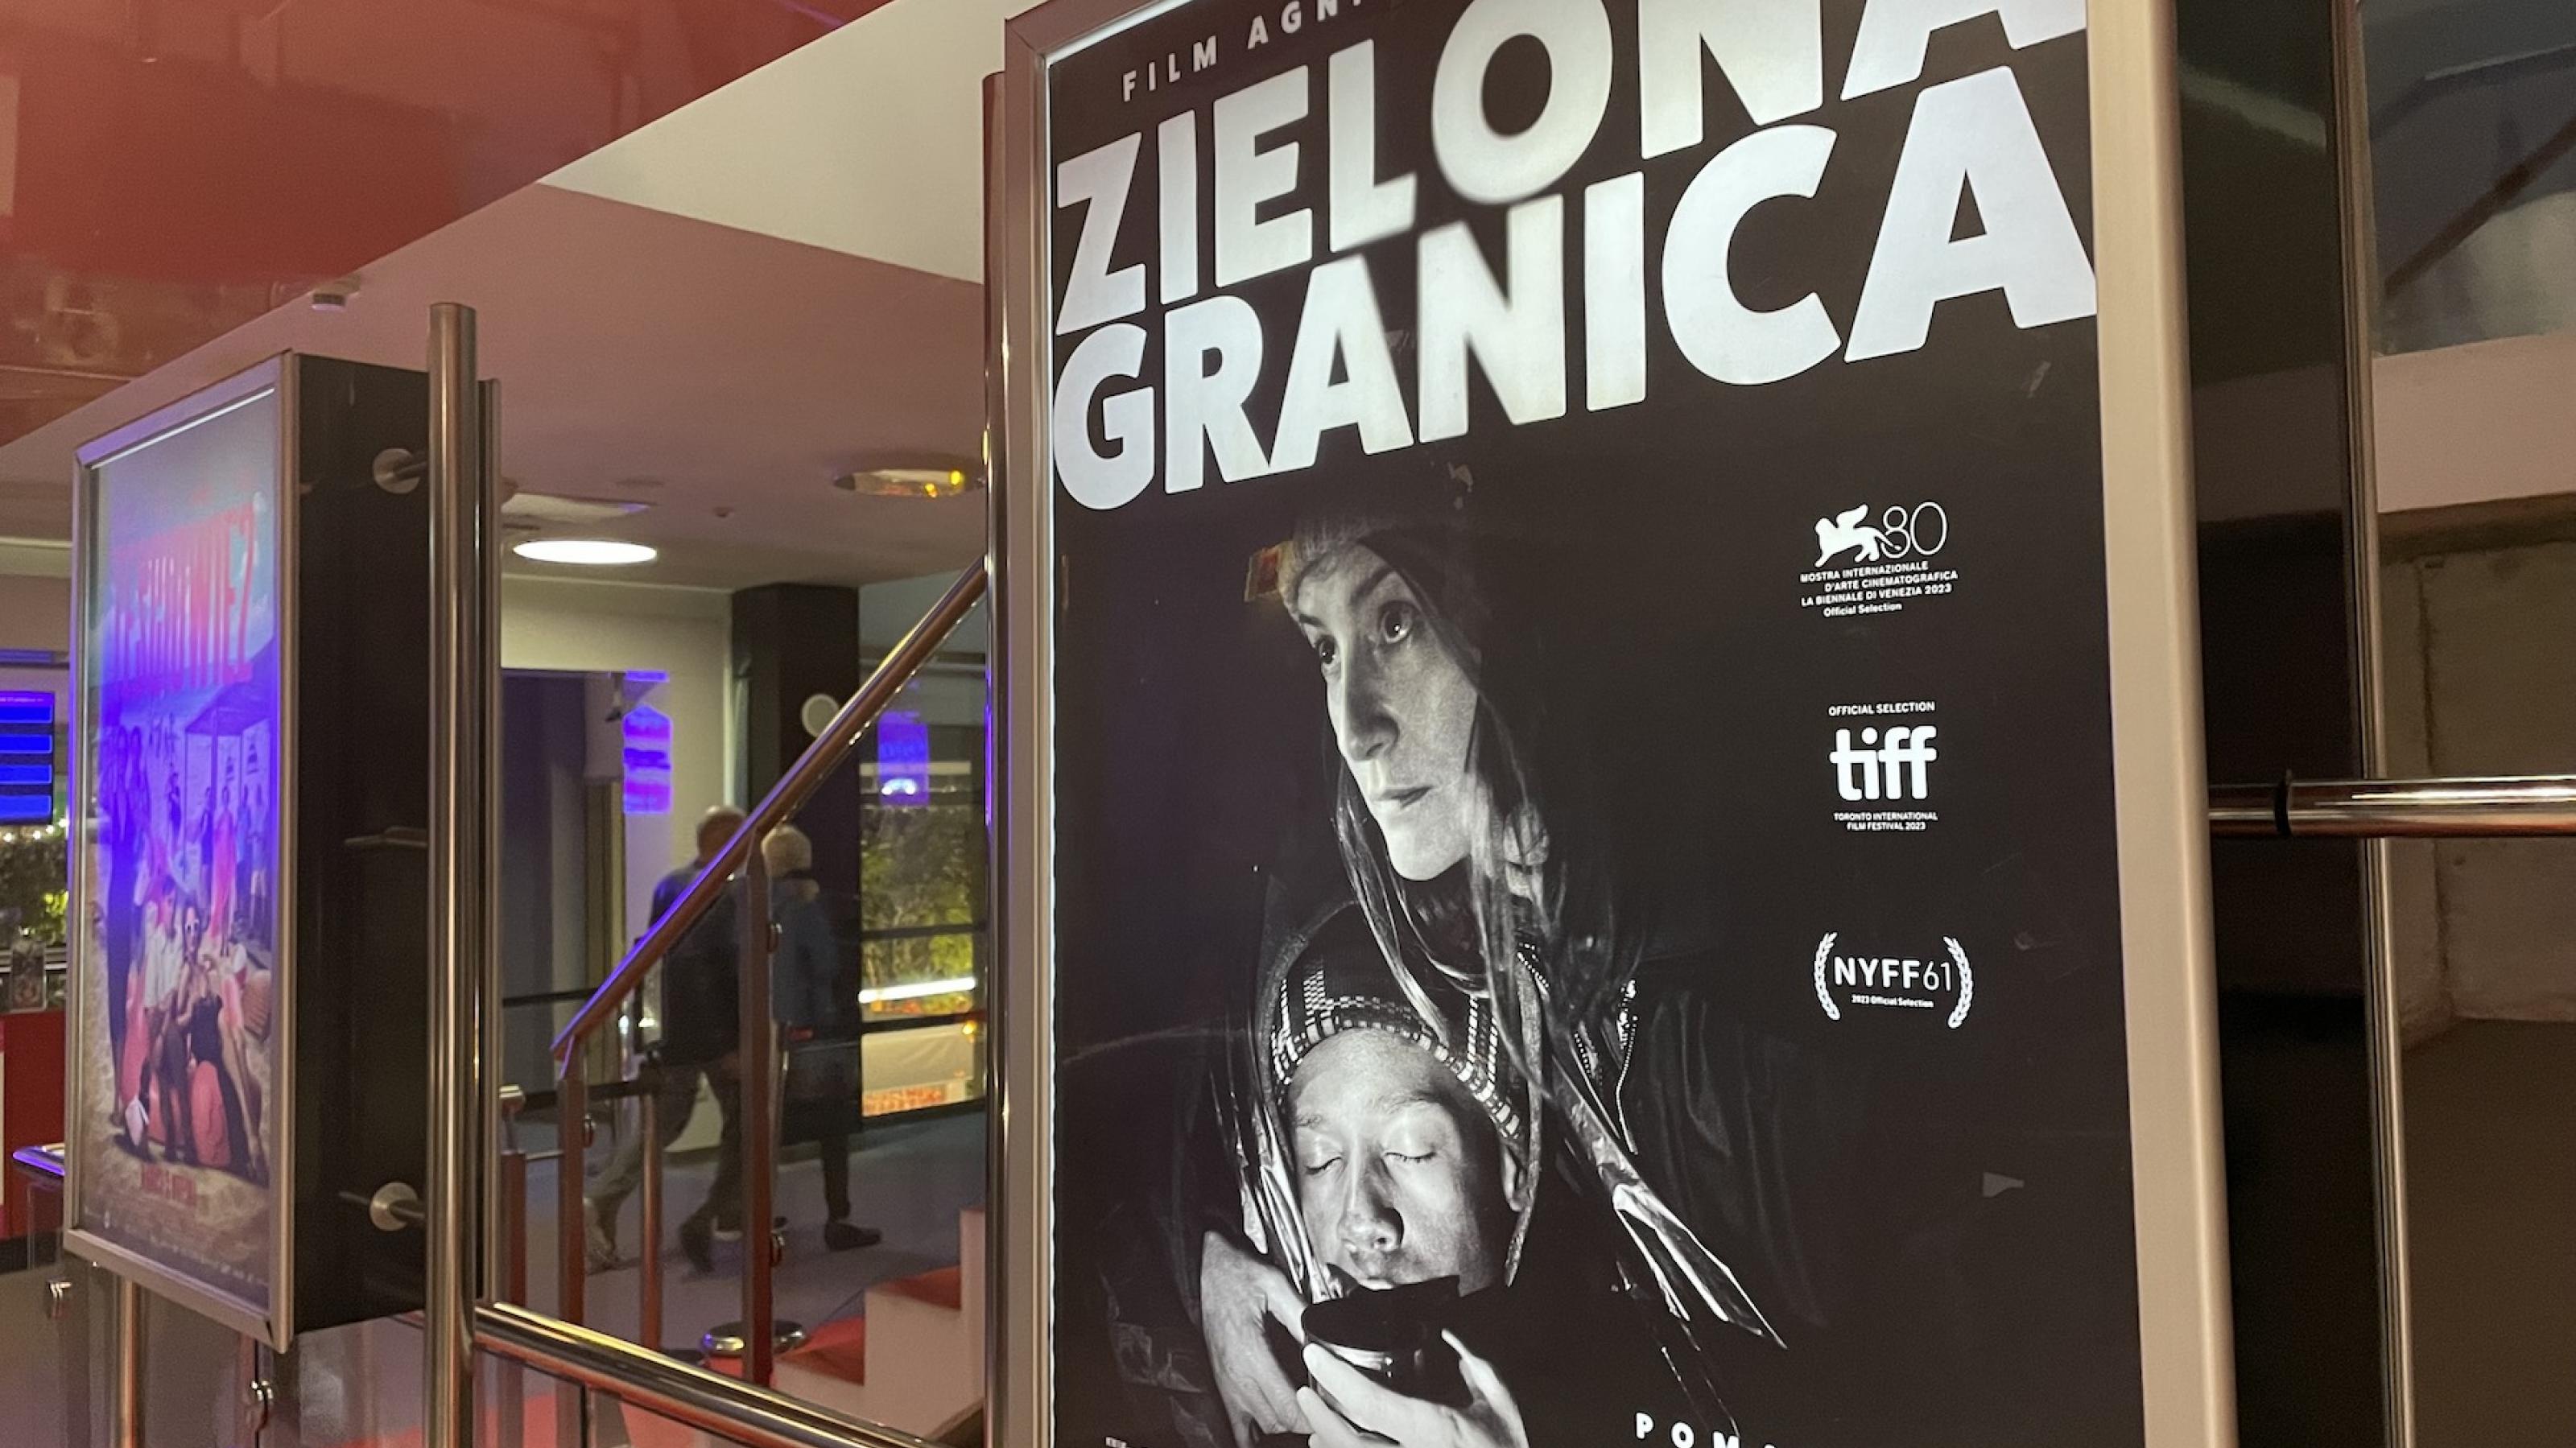 Ein Plakat vor dem Multikino im polnischen Ostseebad Sopot kündigt den Film „Zielona Granica“ (Grüne Grenze) von Agnieszka Holland an.